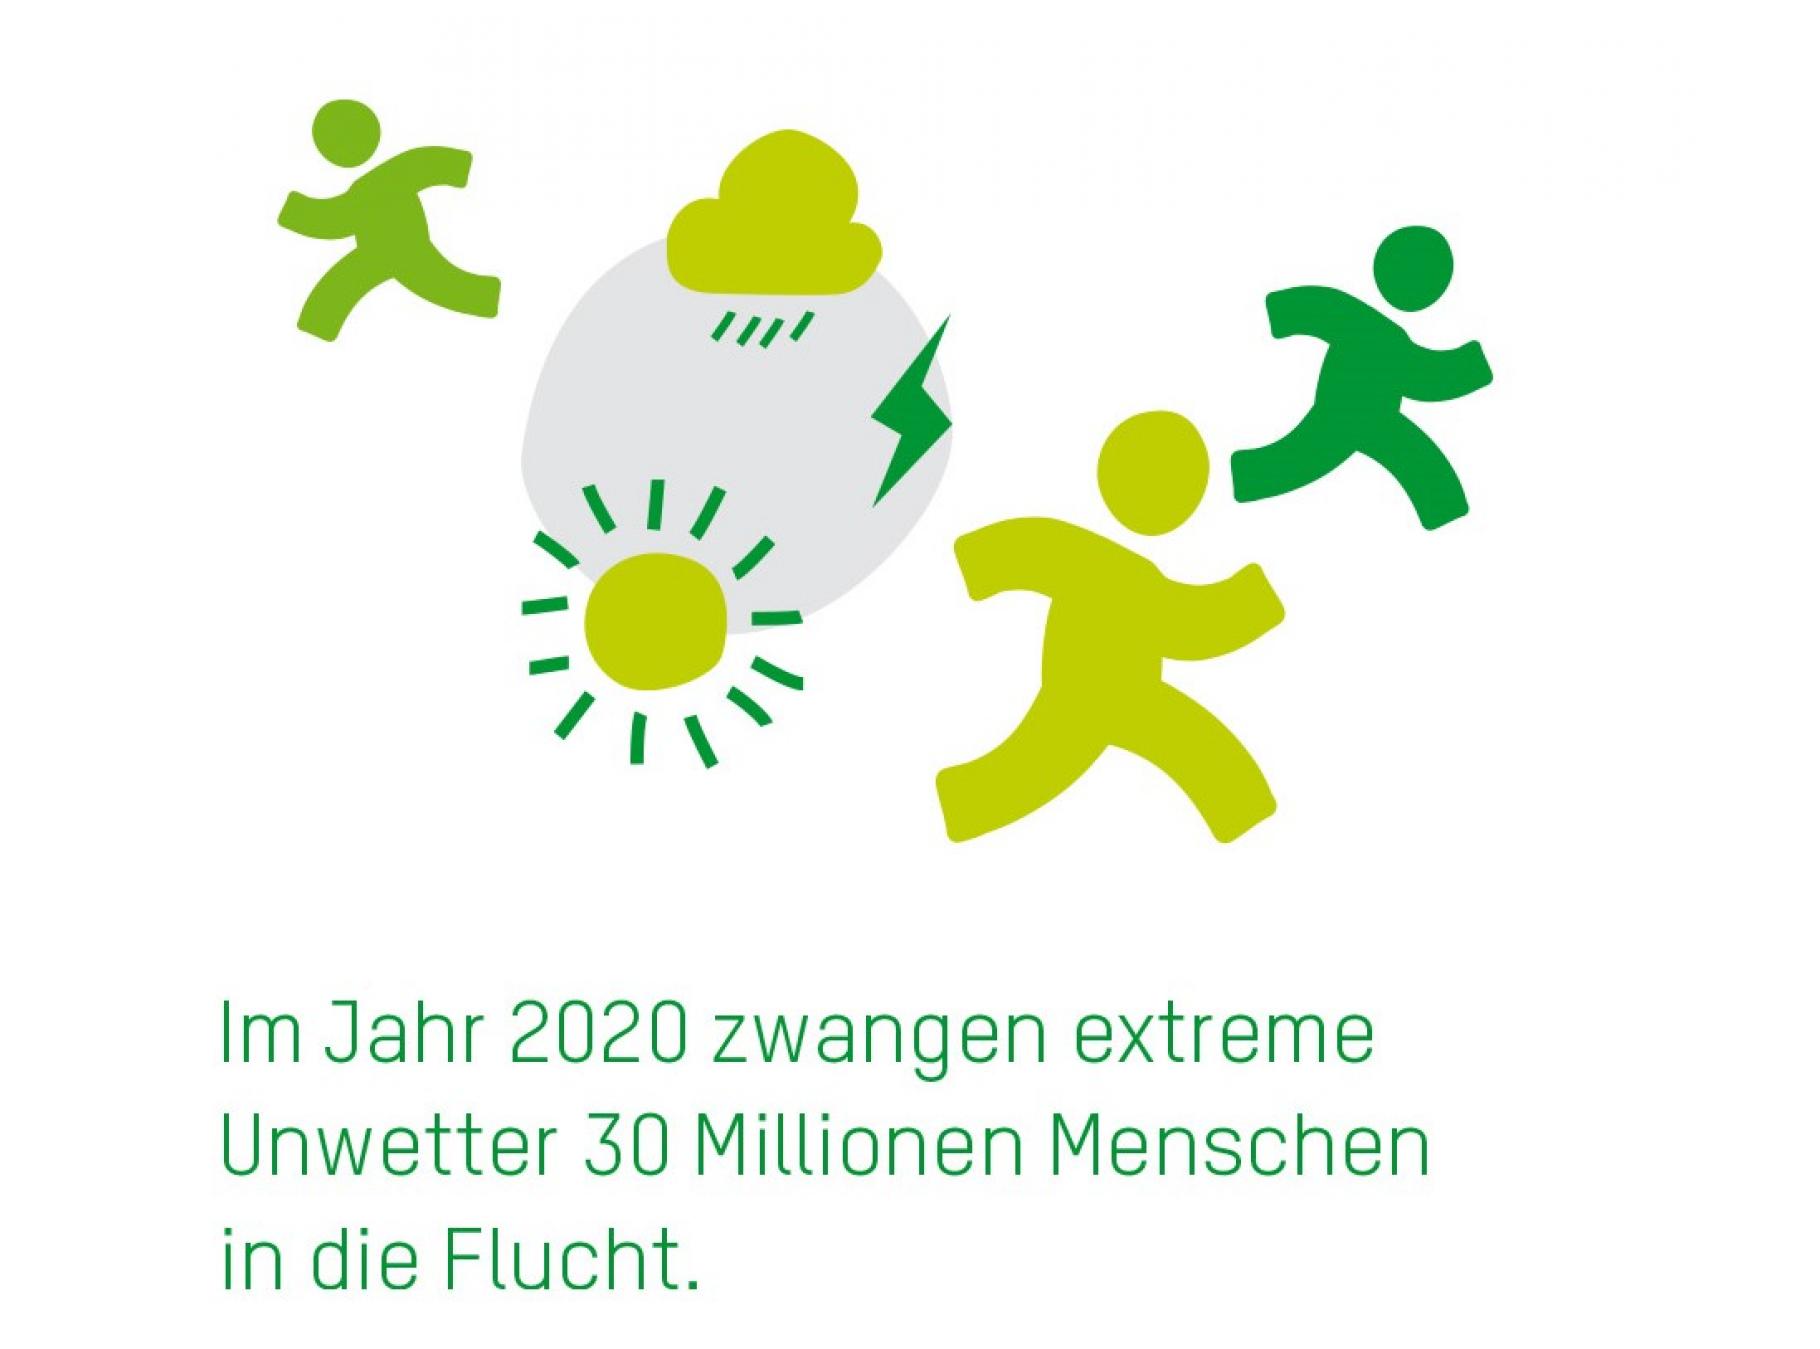 Grafik mit grünen Icons (Regenwolke, Sonne, Blitz, rennende Menschen) und dem Text "Im Jahr 2020 zwangen extreme Unwetter 30 Millionen Menschen in die Flucht"